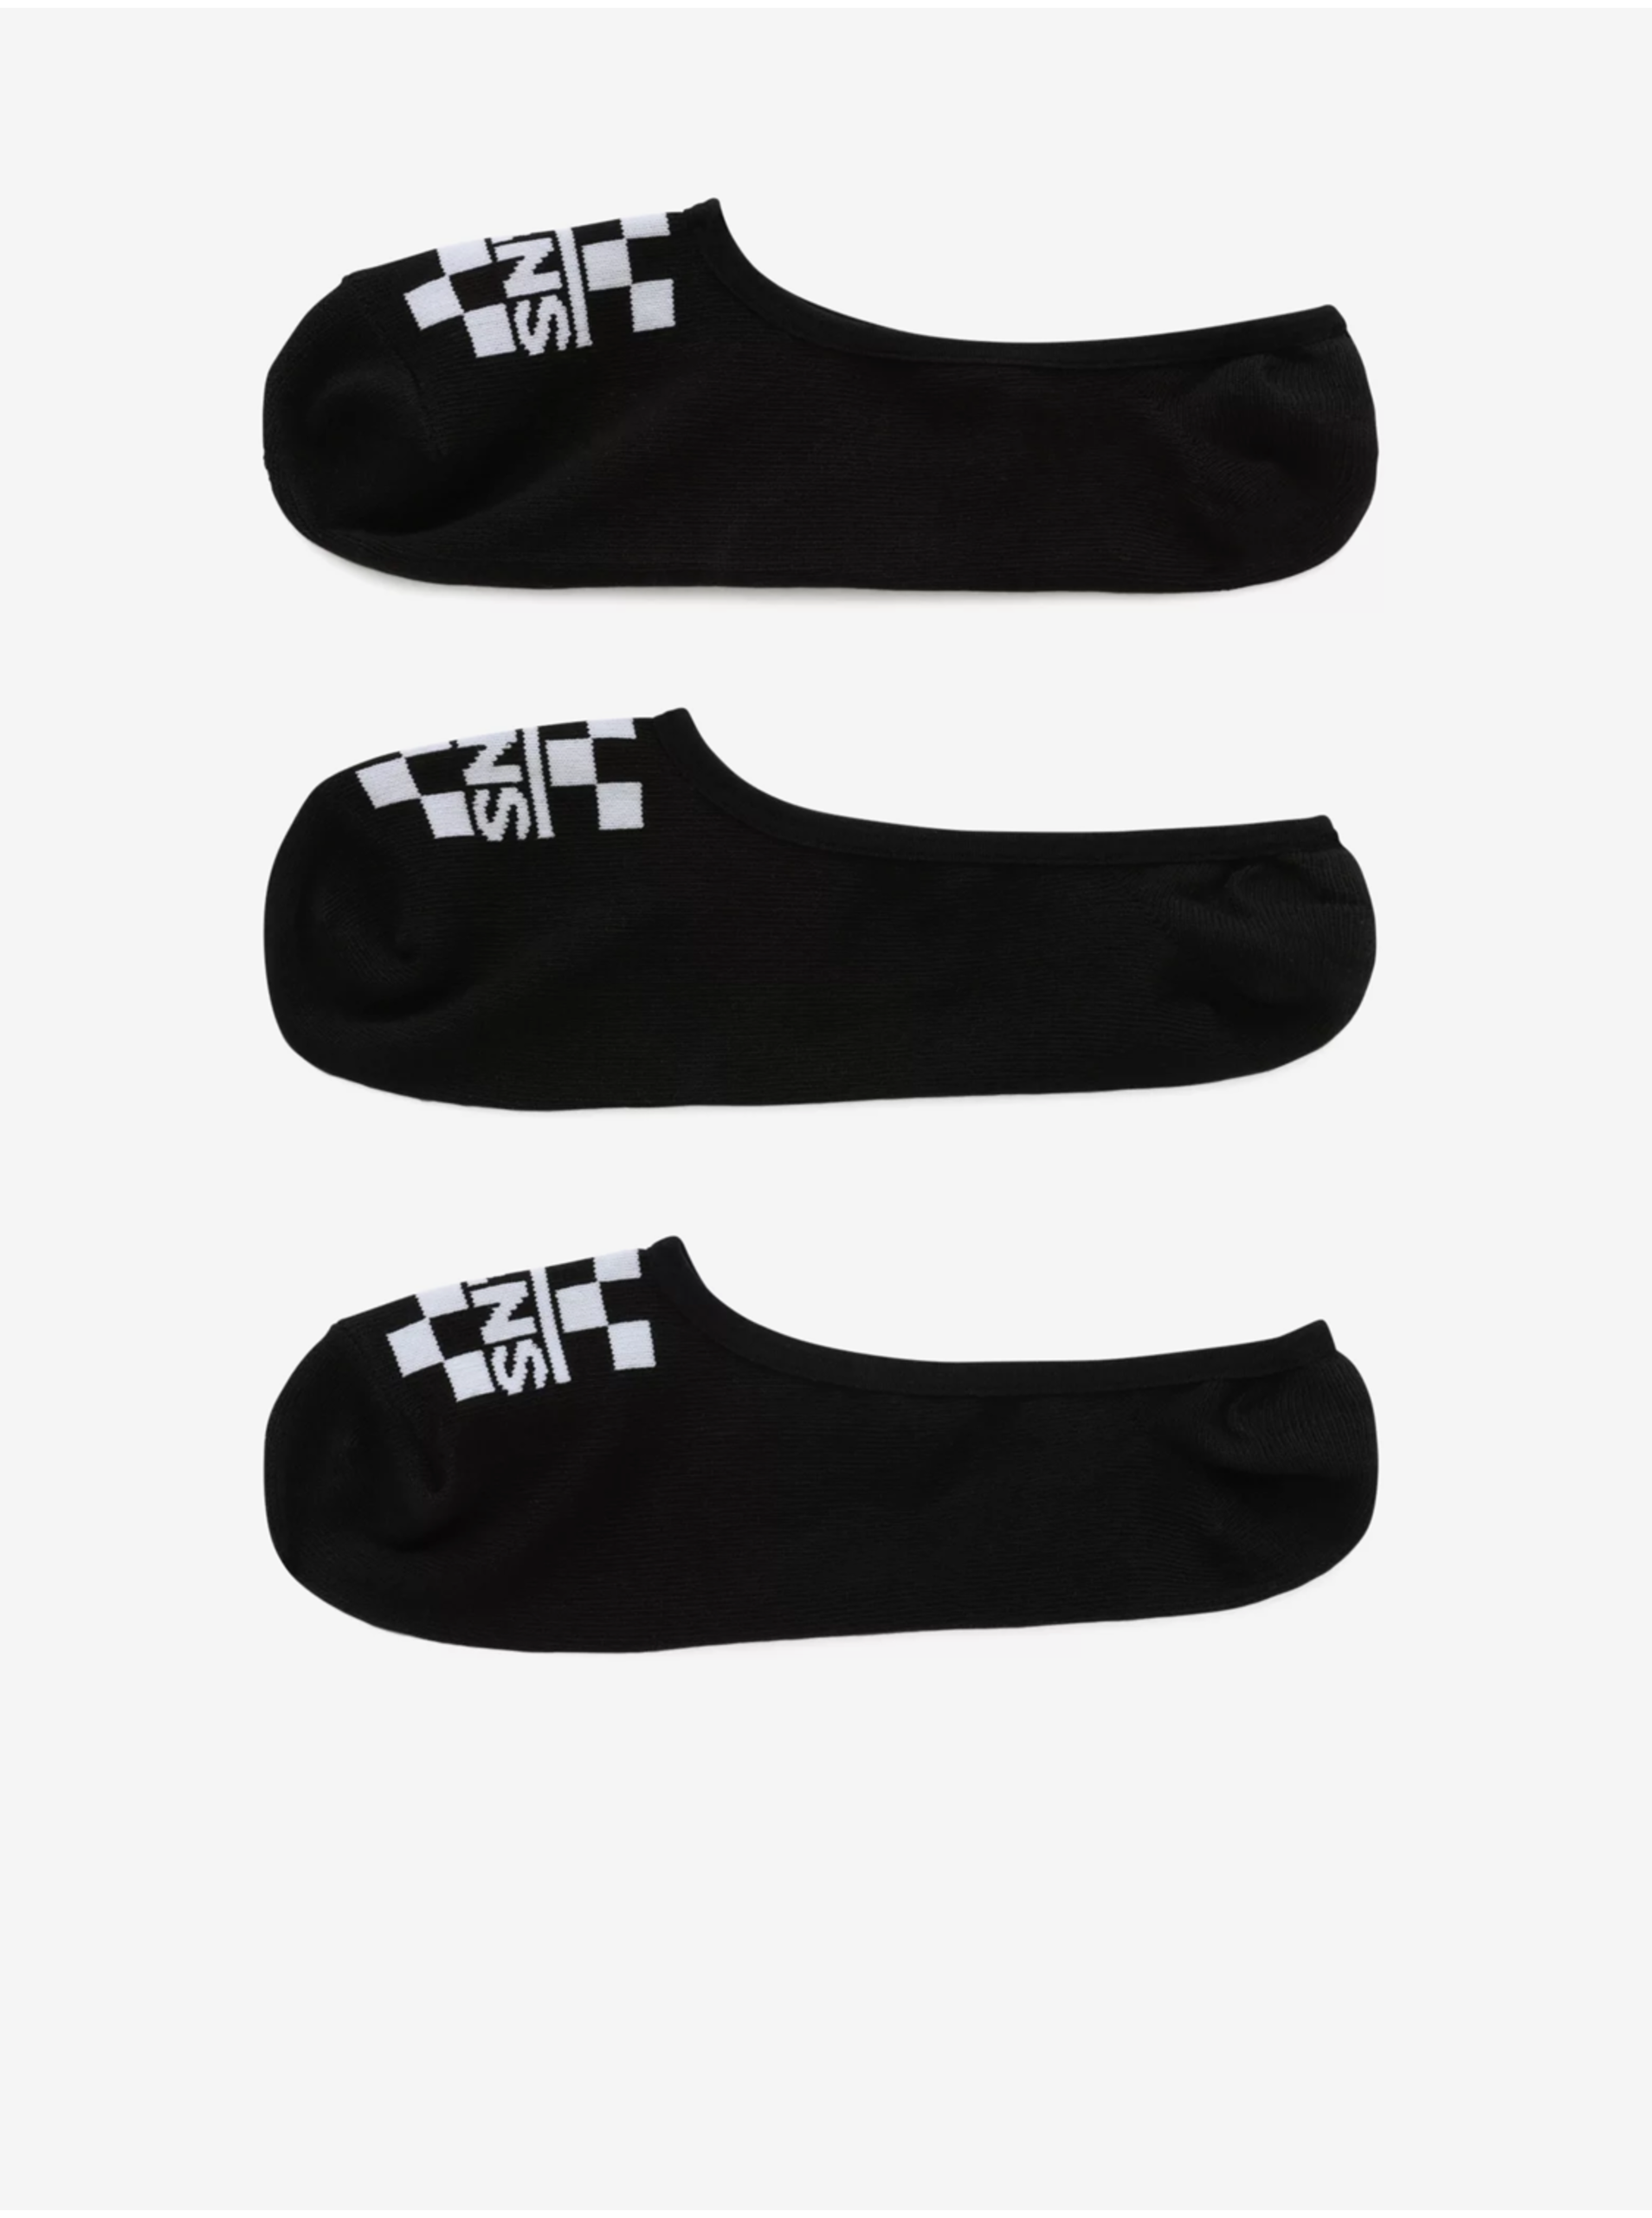 Set of three pairs of socks in black VANS - Men